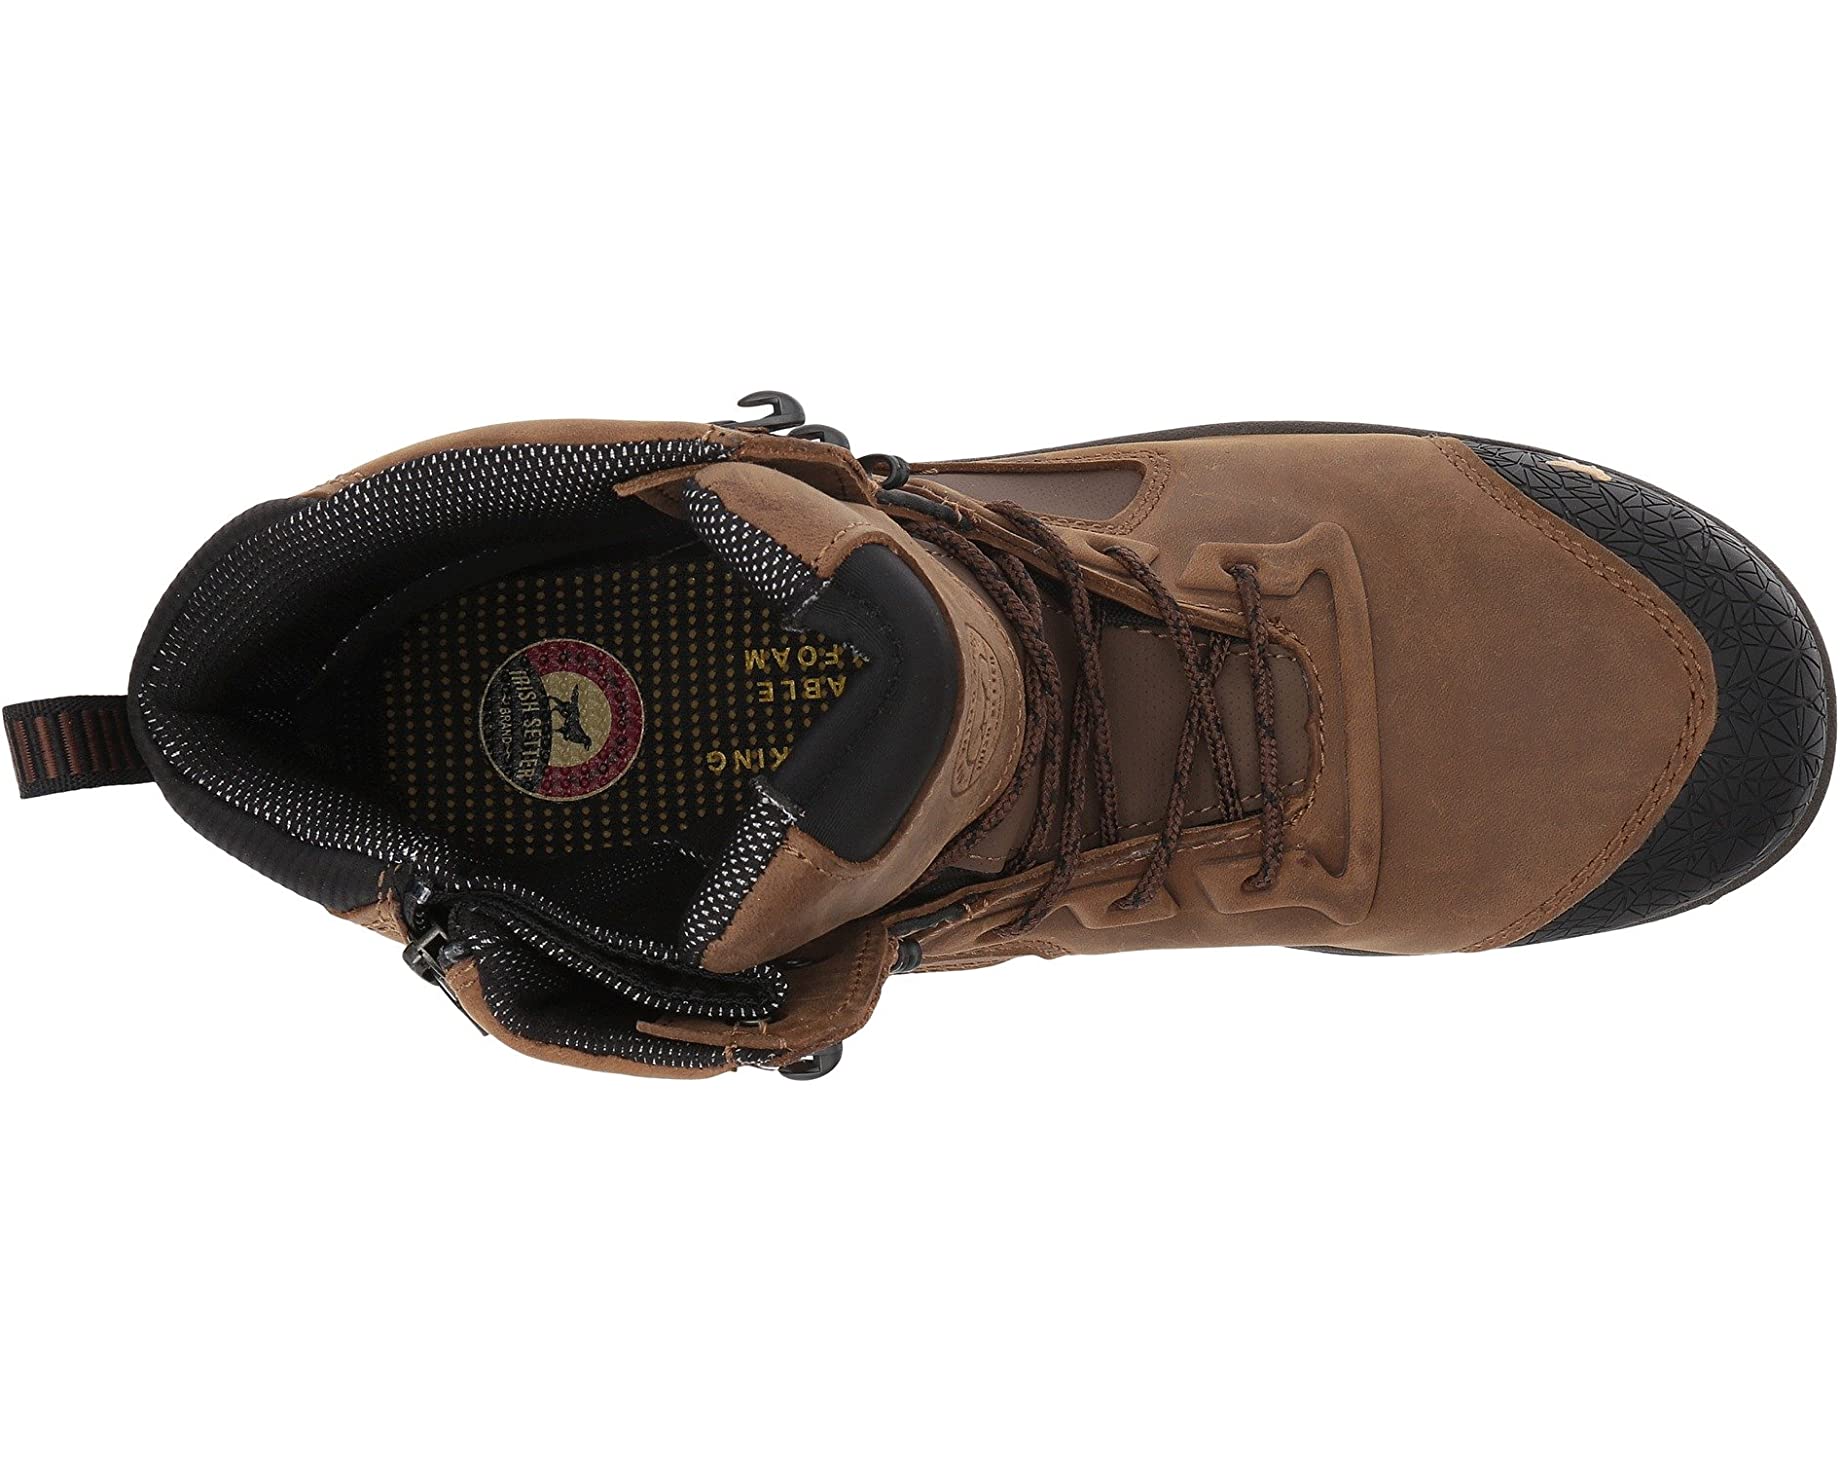 Ботинки Kasota 6 Waterproof Side-Zip Composite-Toe EH Irish Setter,  коричневый – заказать с доставкой из-за рубежа через онлайн-сервис  «CDEK.Shopping»